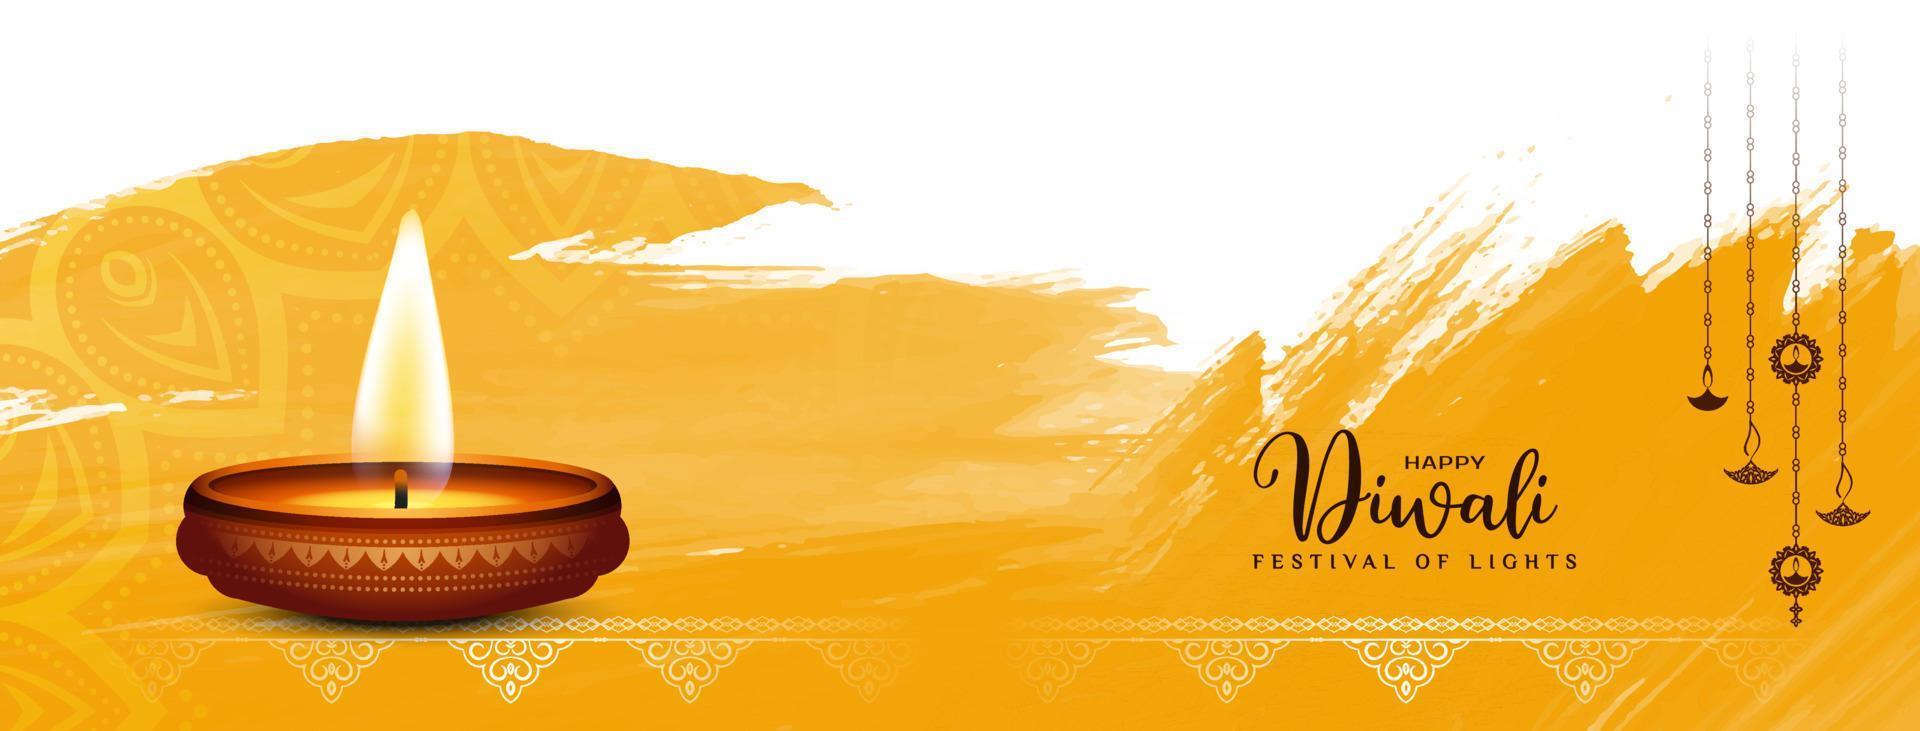 schönes fröhliches diwali festival kulturelles klassisches bannerdesign vektor